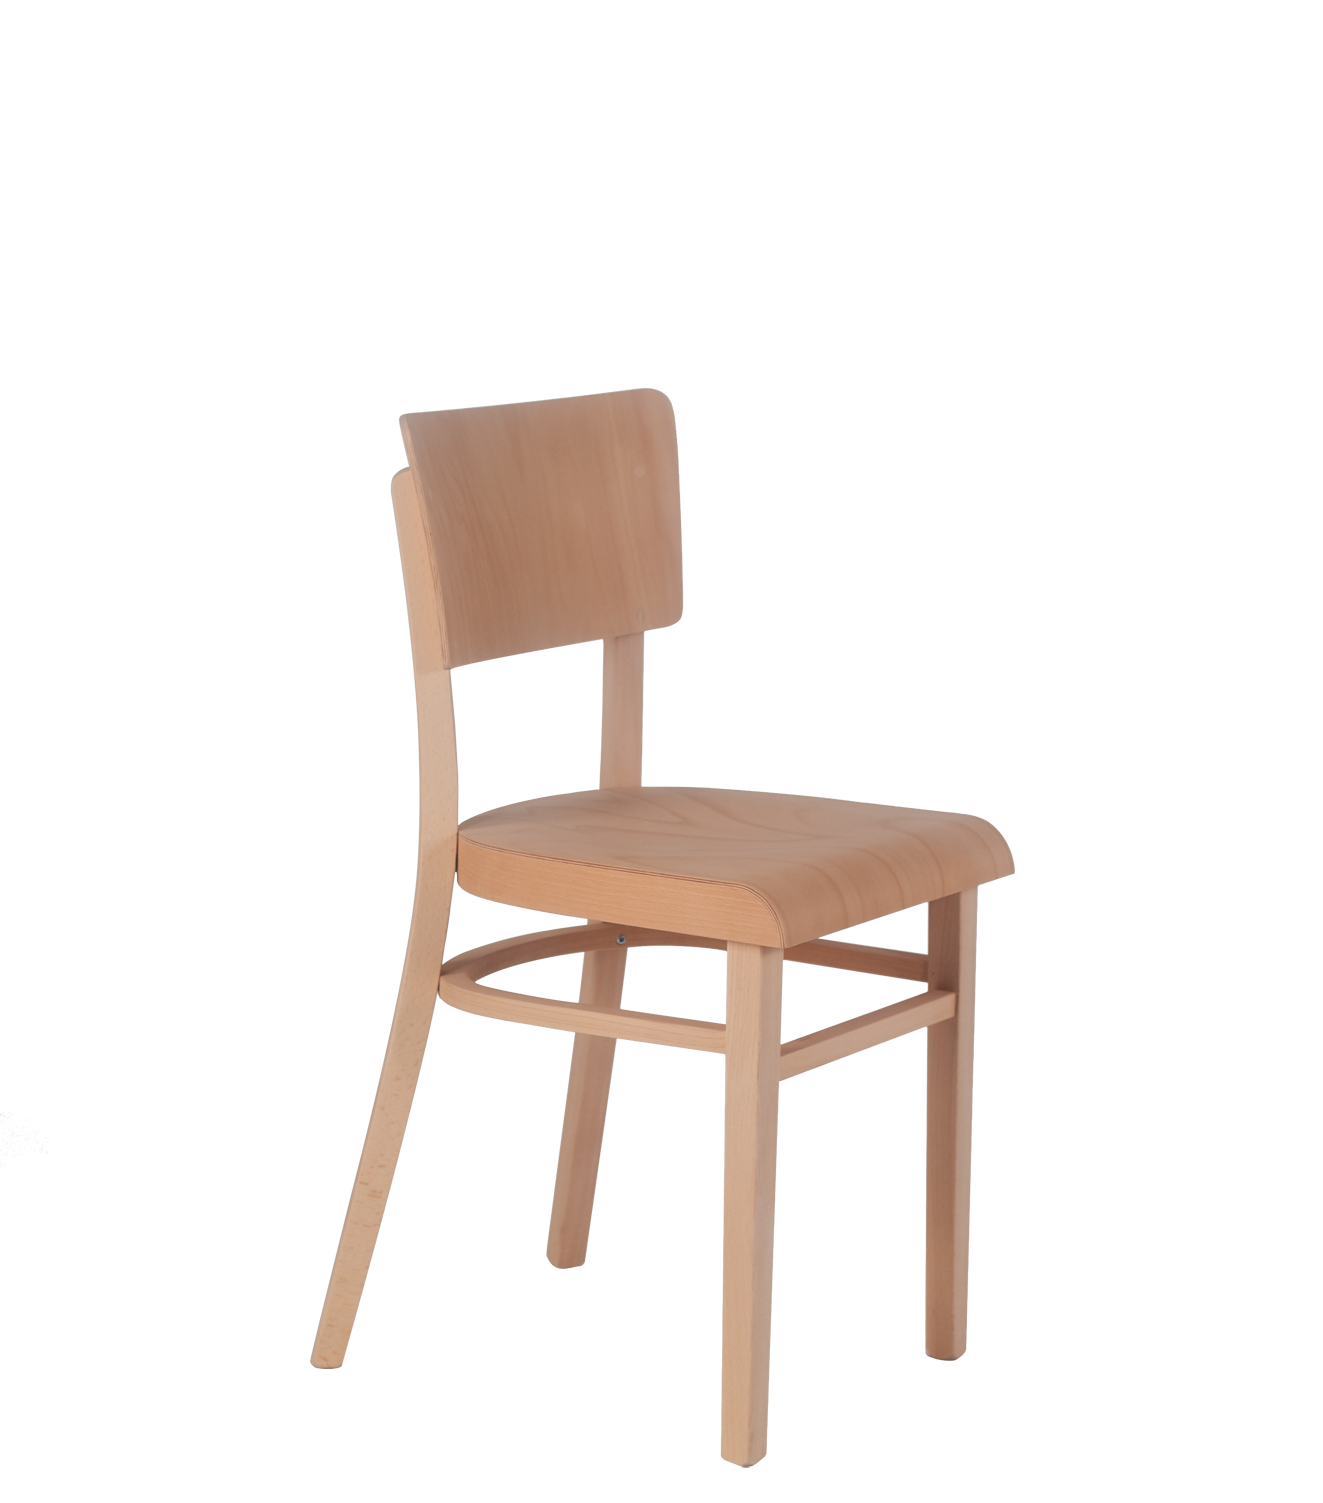 Jídelní židle z ohýbaného buku, klasická židle vhodná do kavárny, restaurace i kuchyně